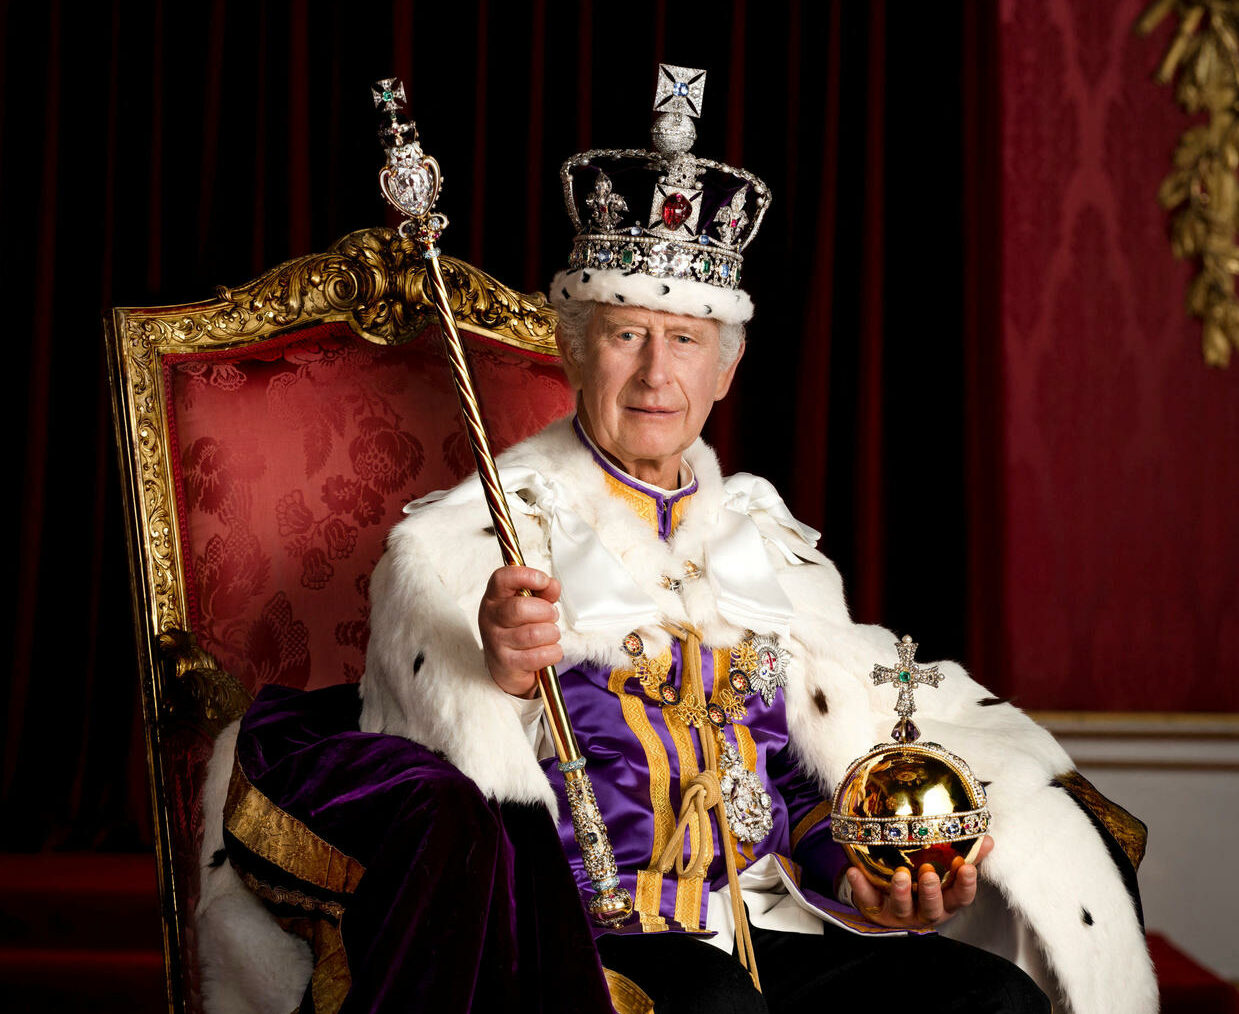 Το πρώτο μήνυμα του Βασιλιά Καρόλου μετά το τέλος των εορτασμών για τη στέψη. Η πρώτη επίσημη φωτογραφία σαν Βασιλιάς